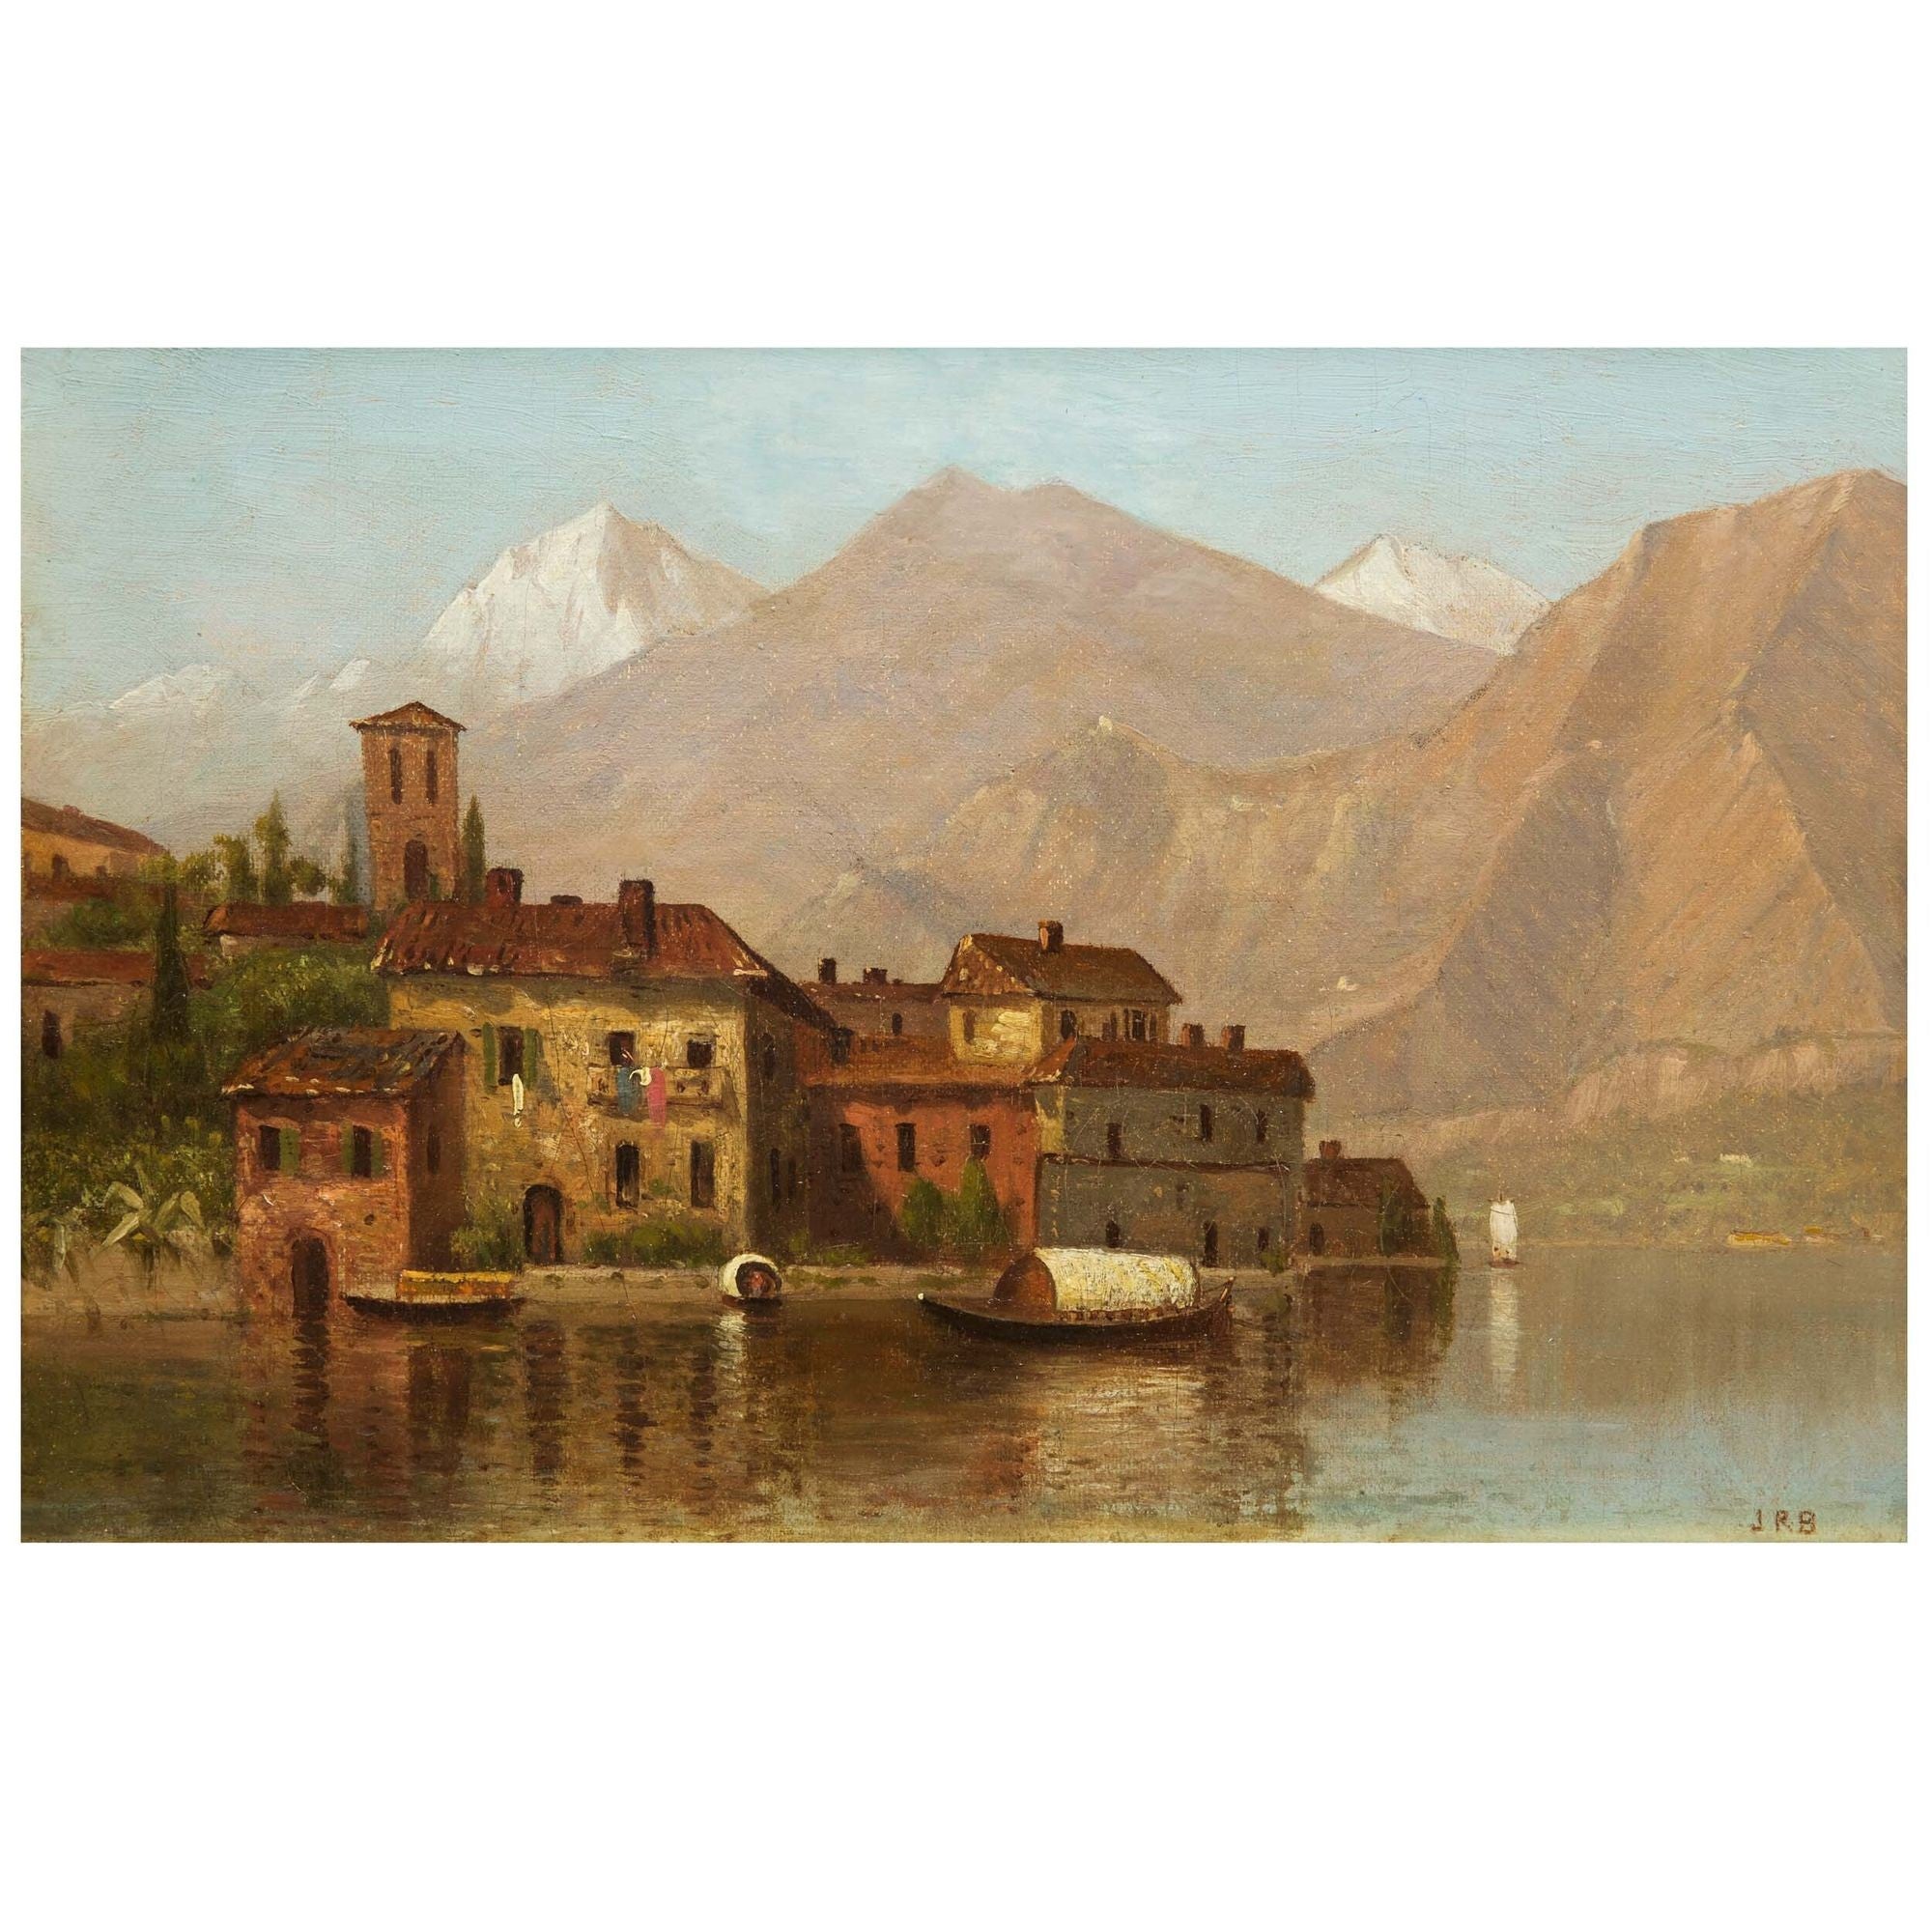 Paysage tonaliste américain du lac de Como peint par A James Renwick Brevoort